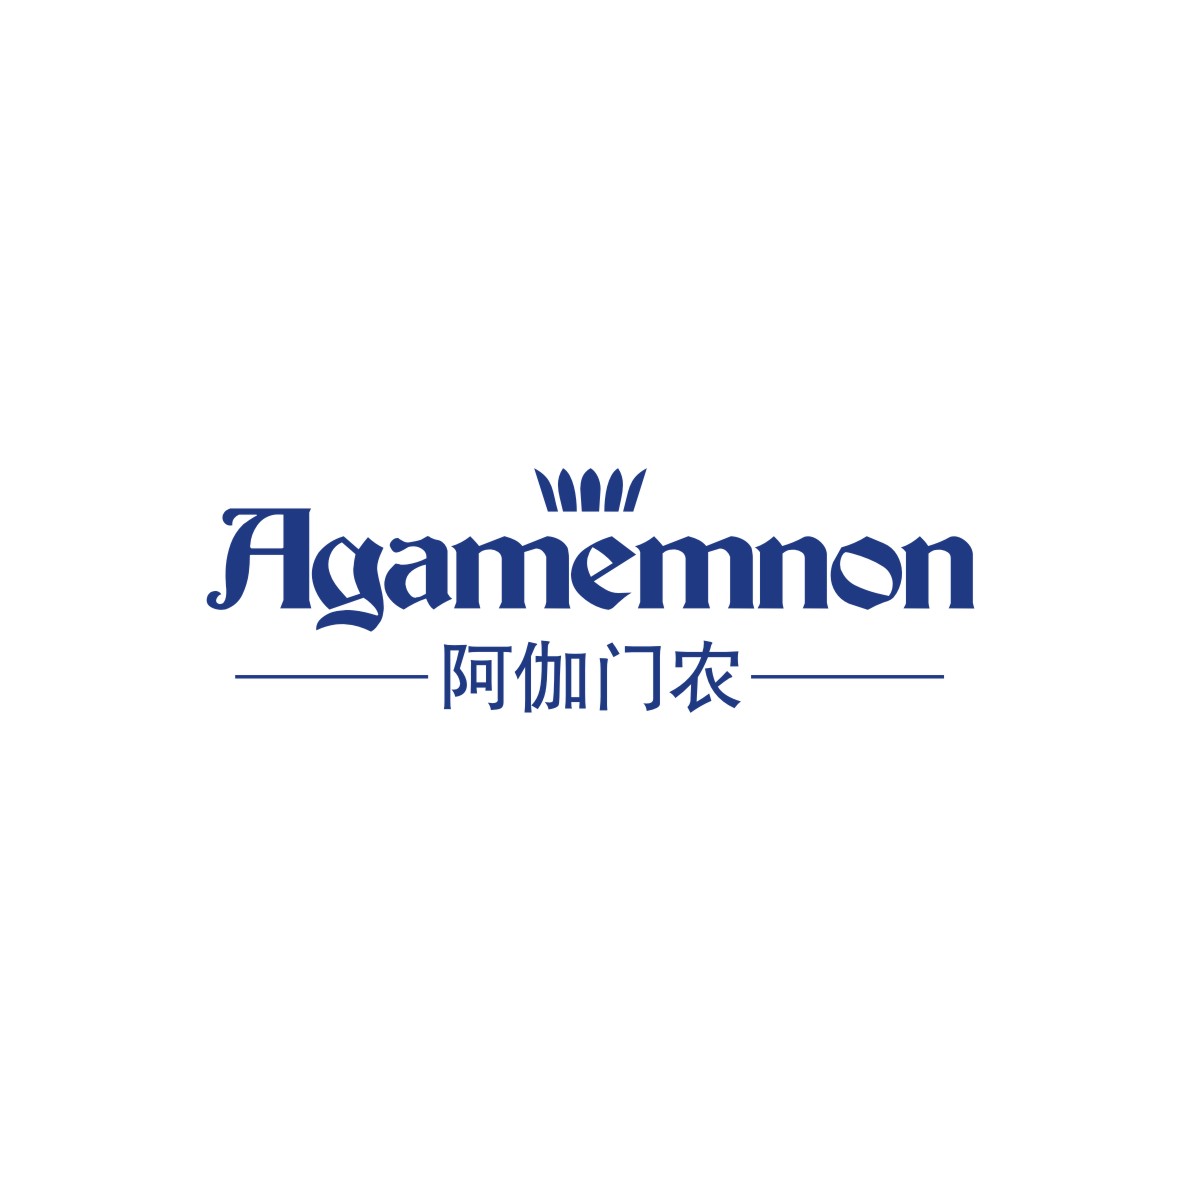 广州品翰文化发展有限公司商标阿伽门农 AGAMEMNON（19类）商标转让多少钱？